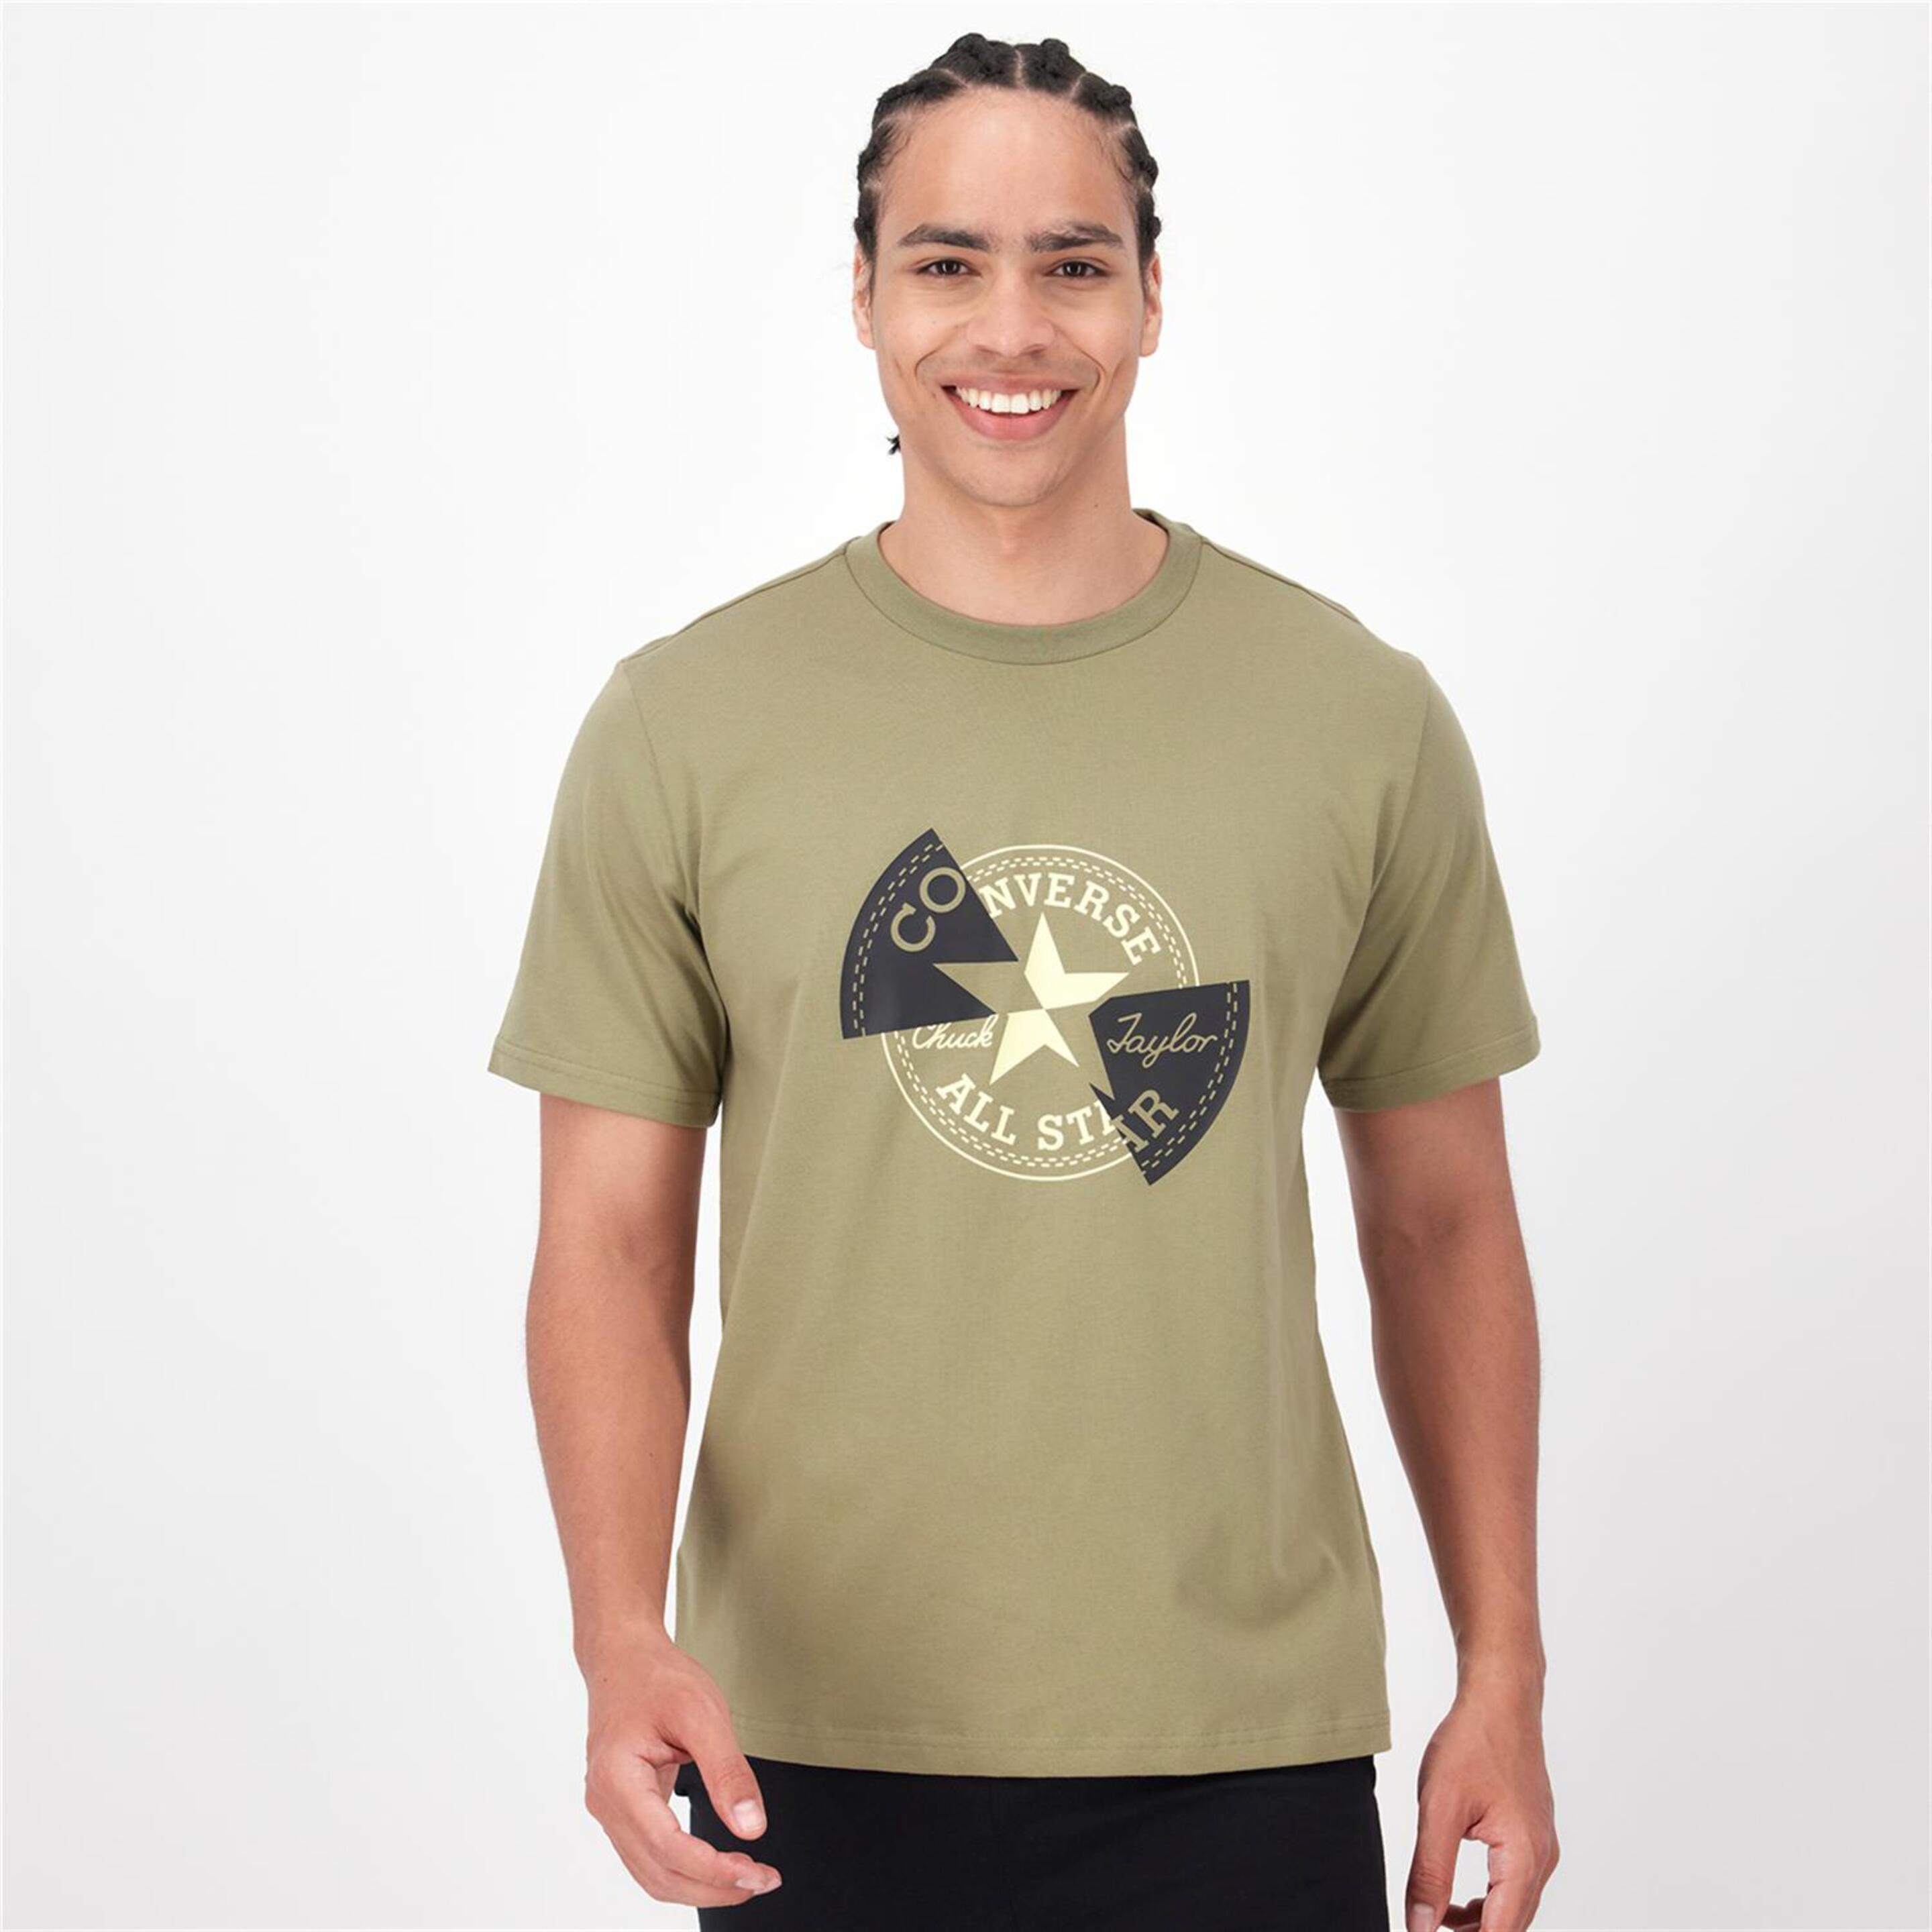 Converse Distorted - verde - T-shirt Homem